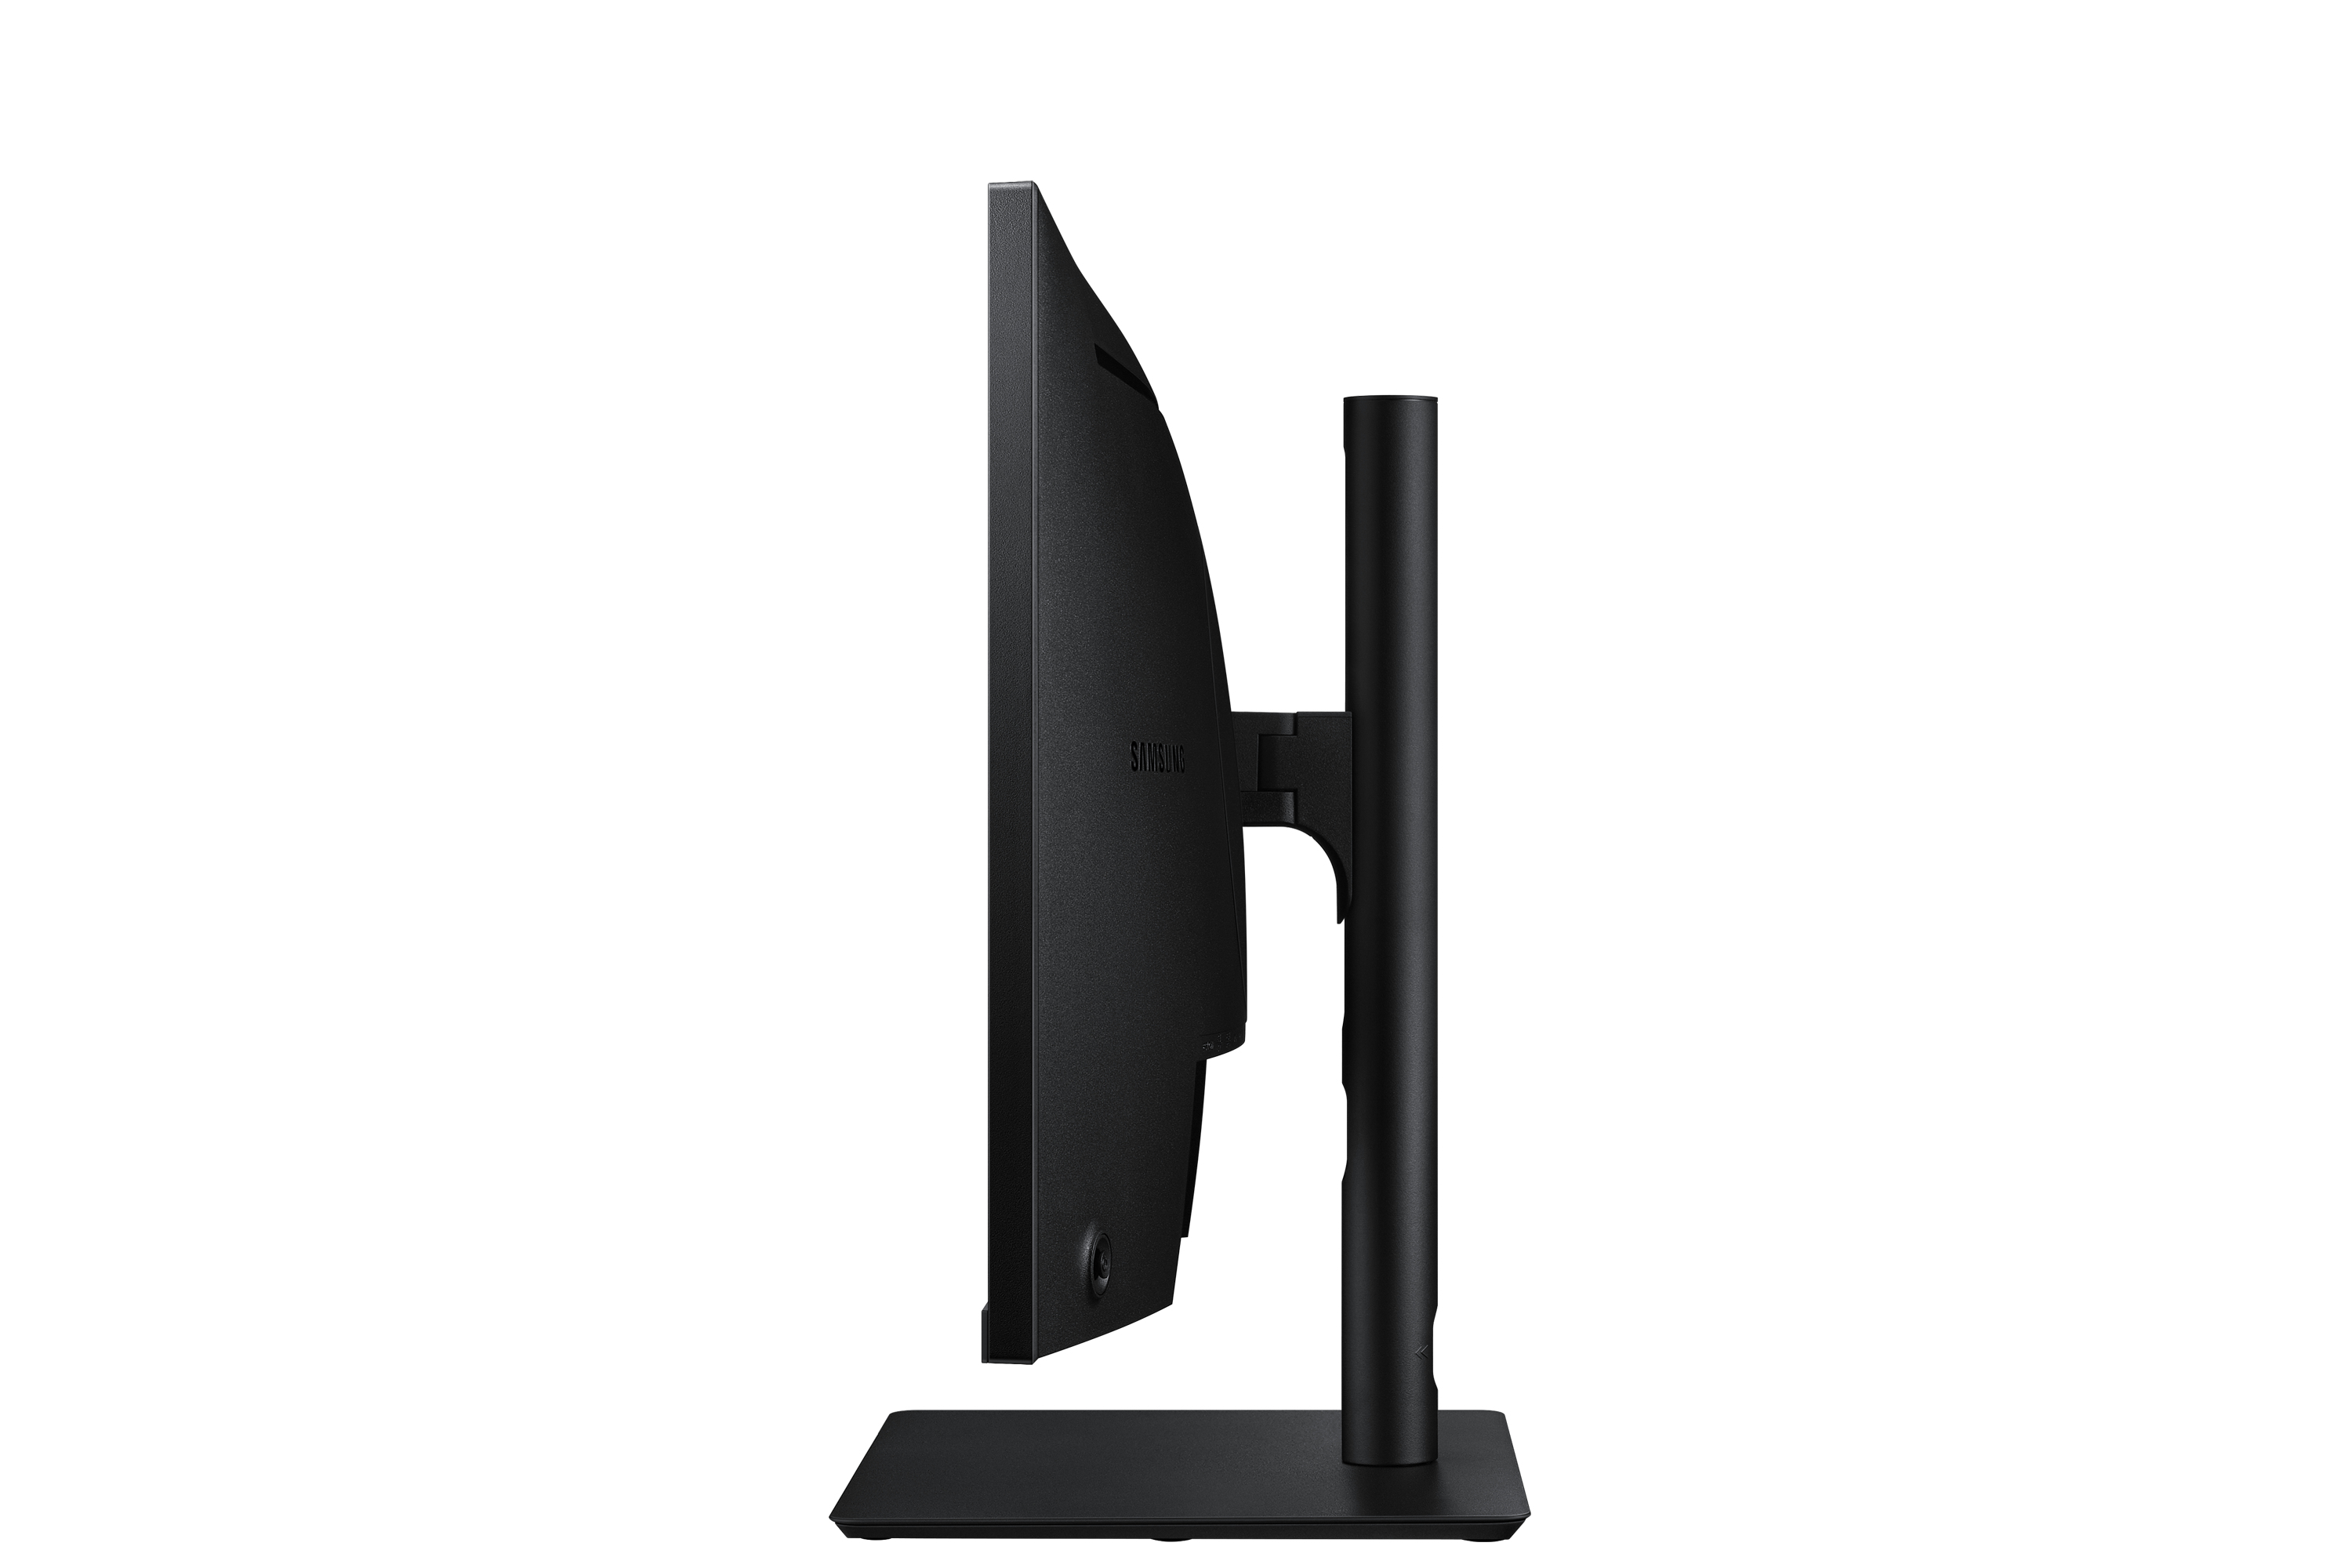 Samsung Office Monitor | 24"(60,96cm) | FHD | USB Hub | R652